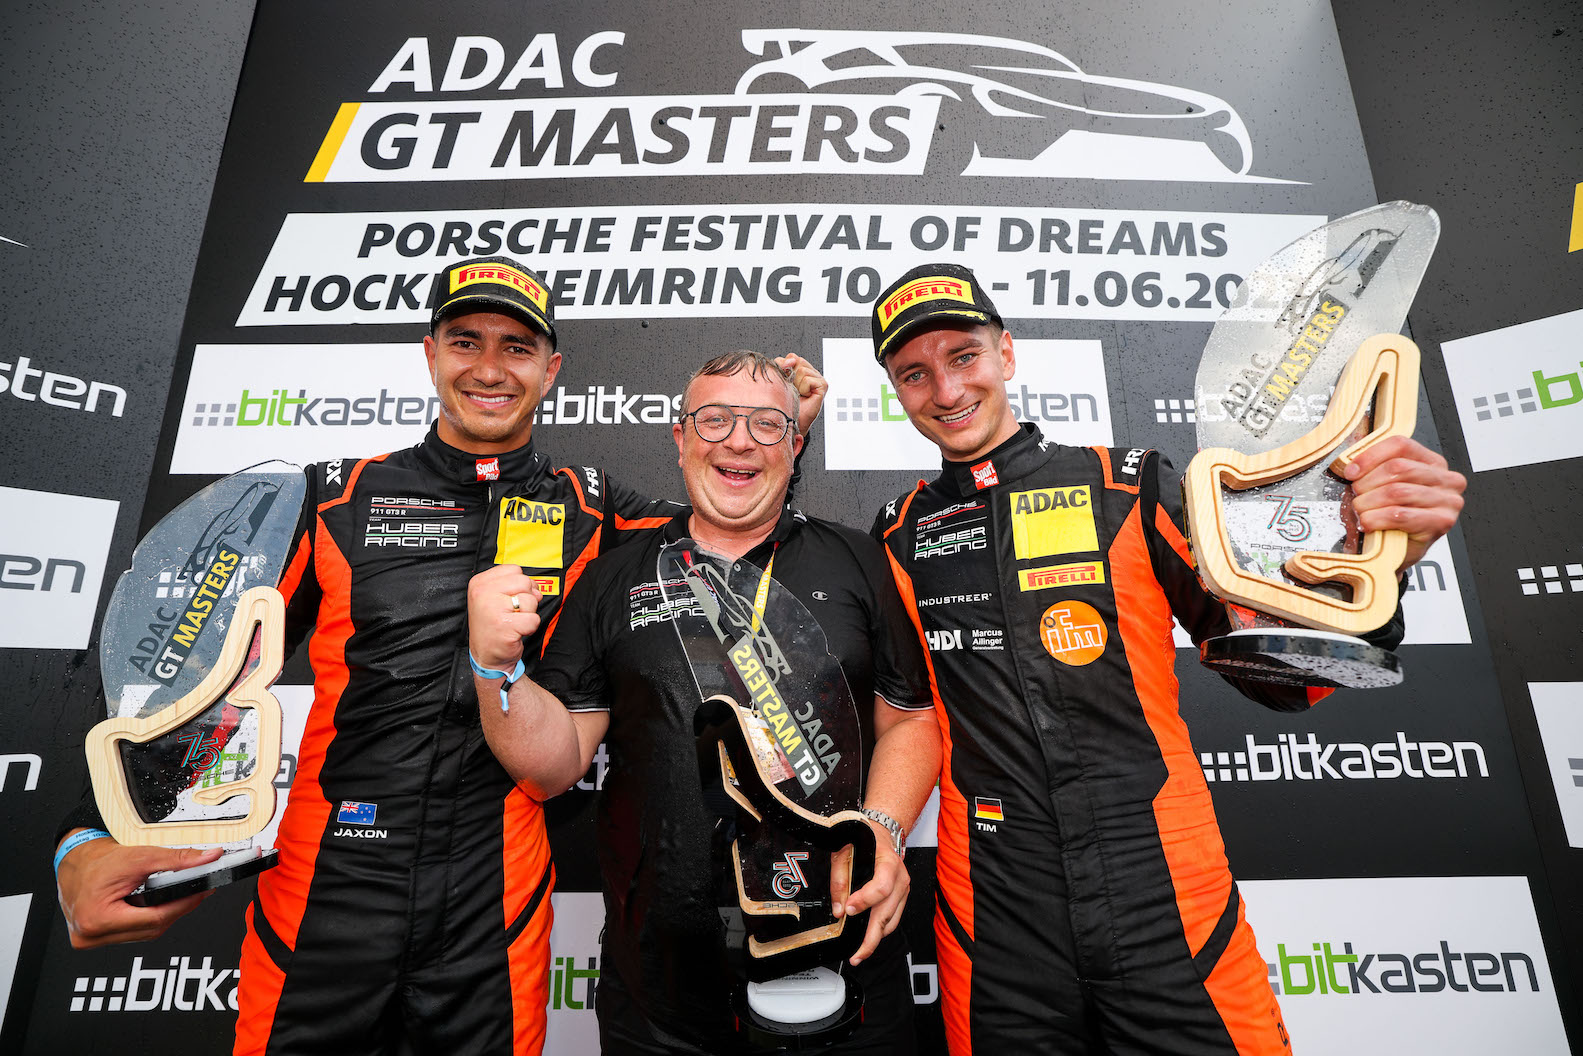 Sieg im ersten ADAC GT Masters-Rennen: Huber Racing jubelt in Hockenheim